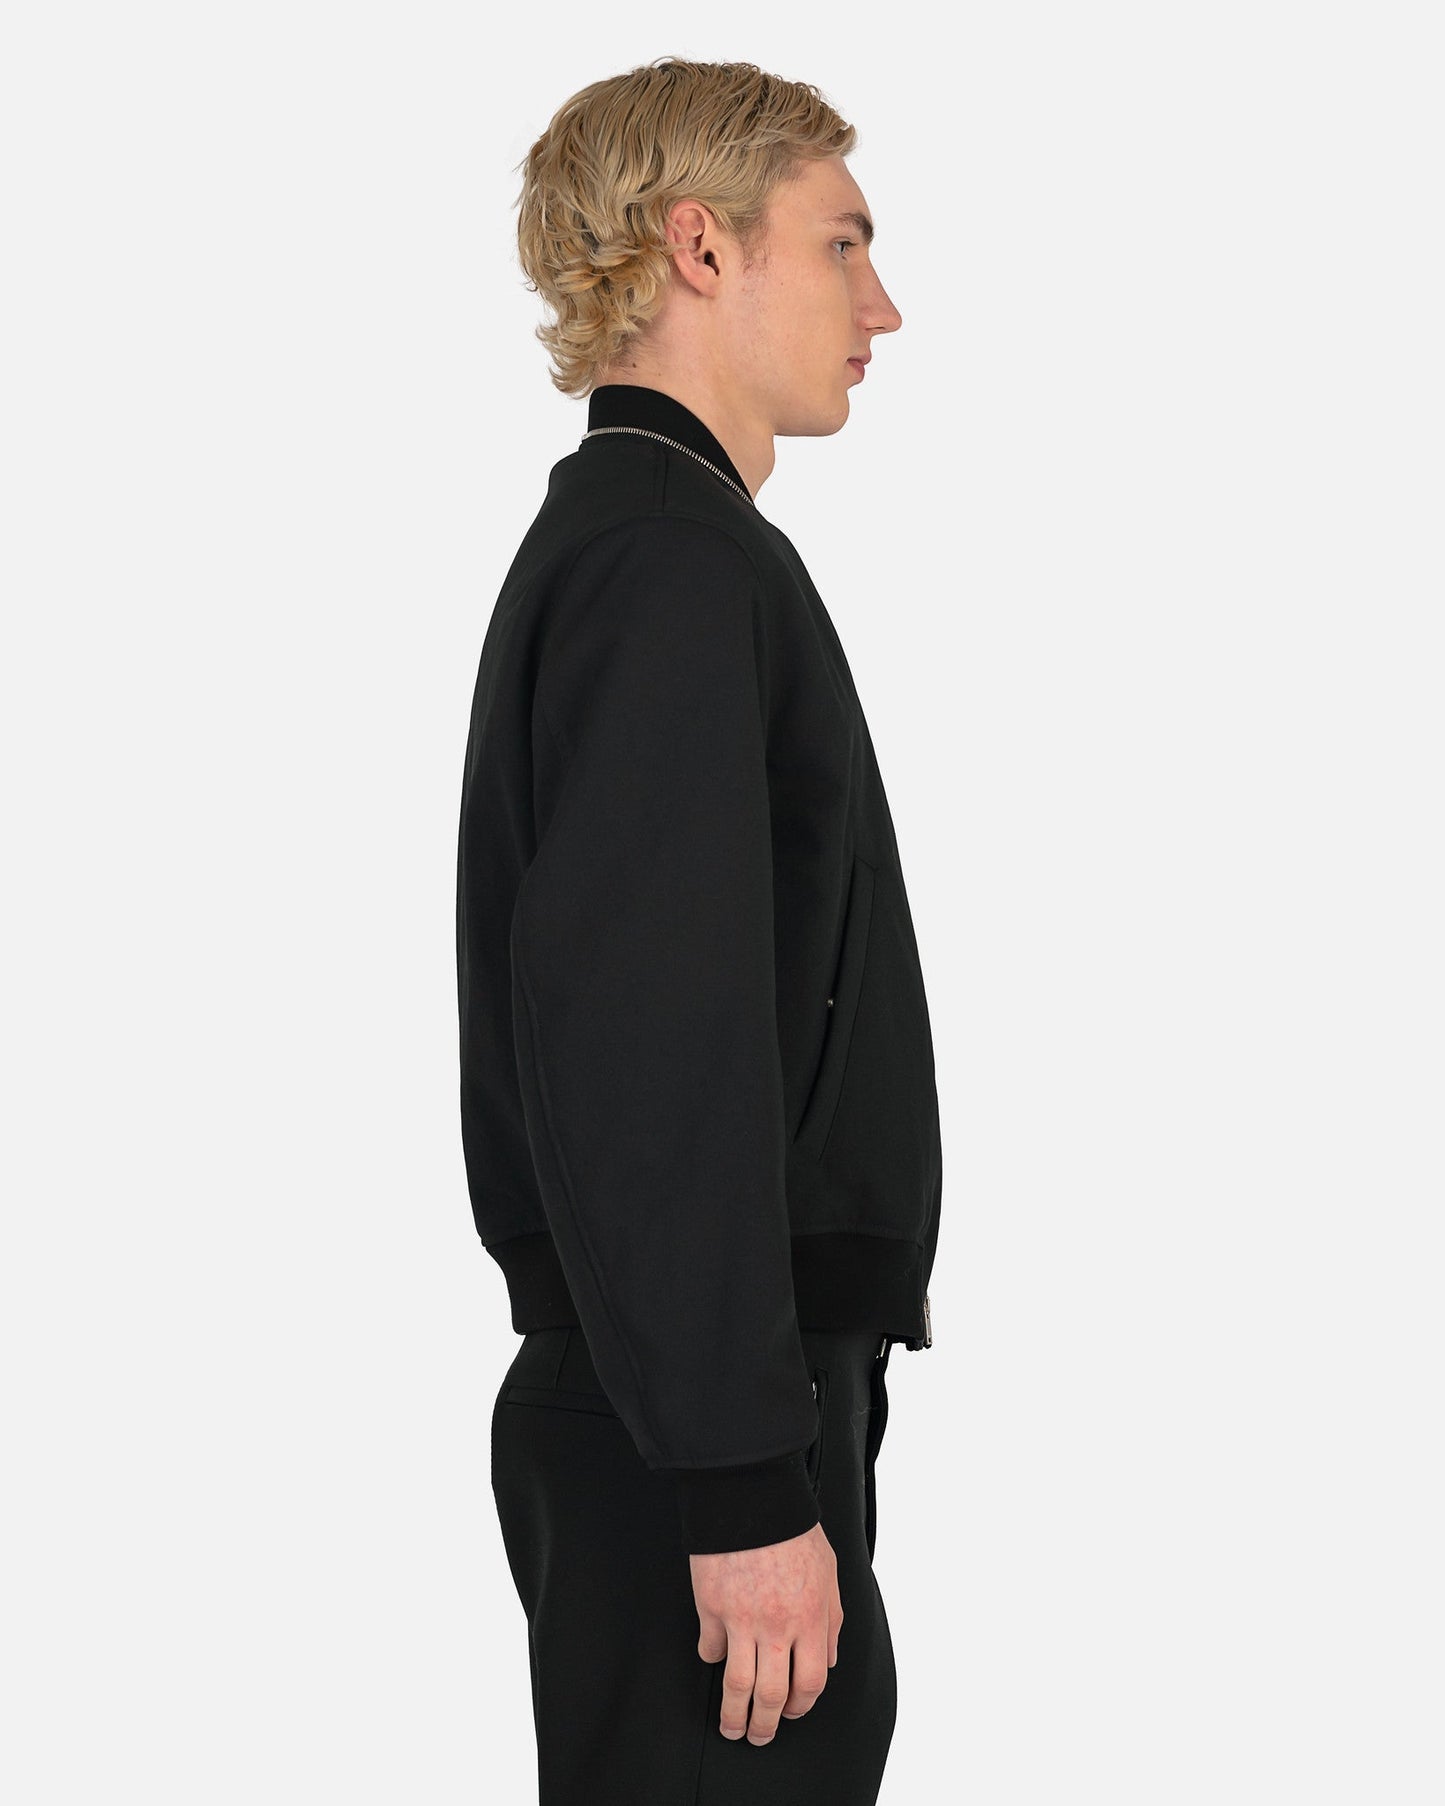 Jil Sander Men's Jackets Bomber Jacket in Black